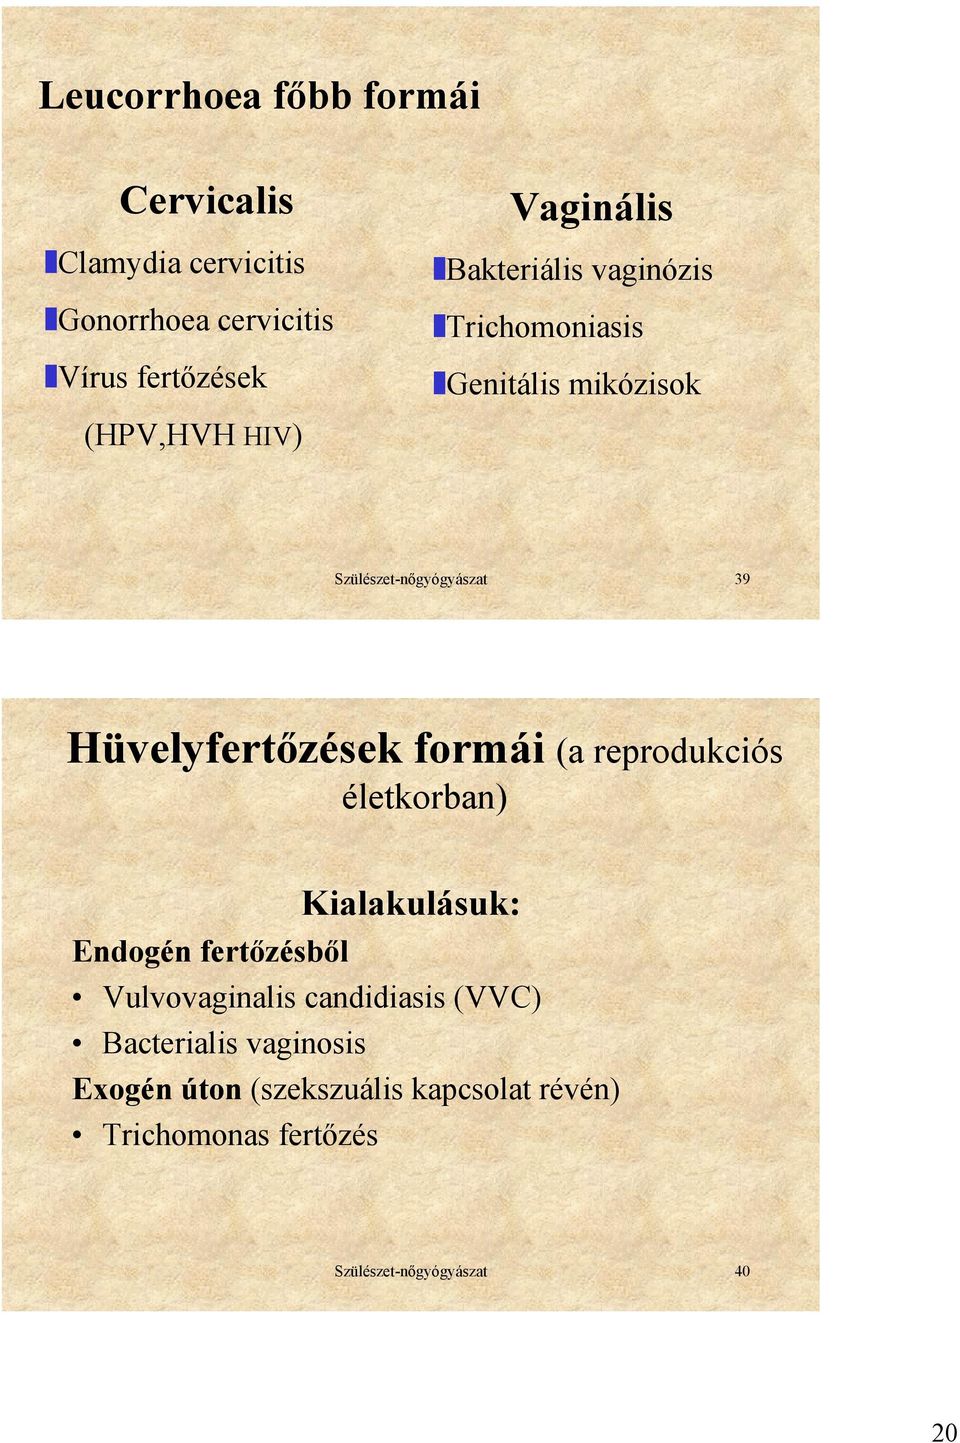 Hüvelyfertőzések formái (a reprodukciós életkorban) Kialakulásuk: Endogén fertőzésből Vulvovaginalis